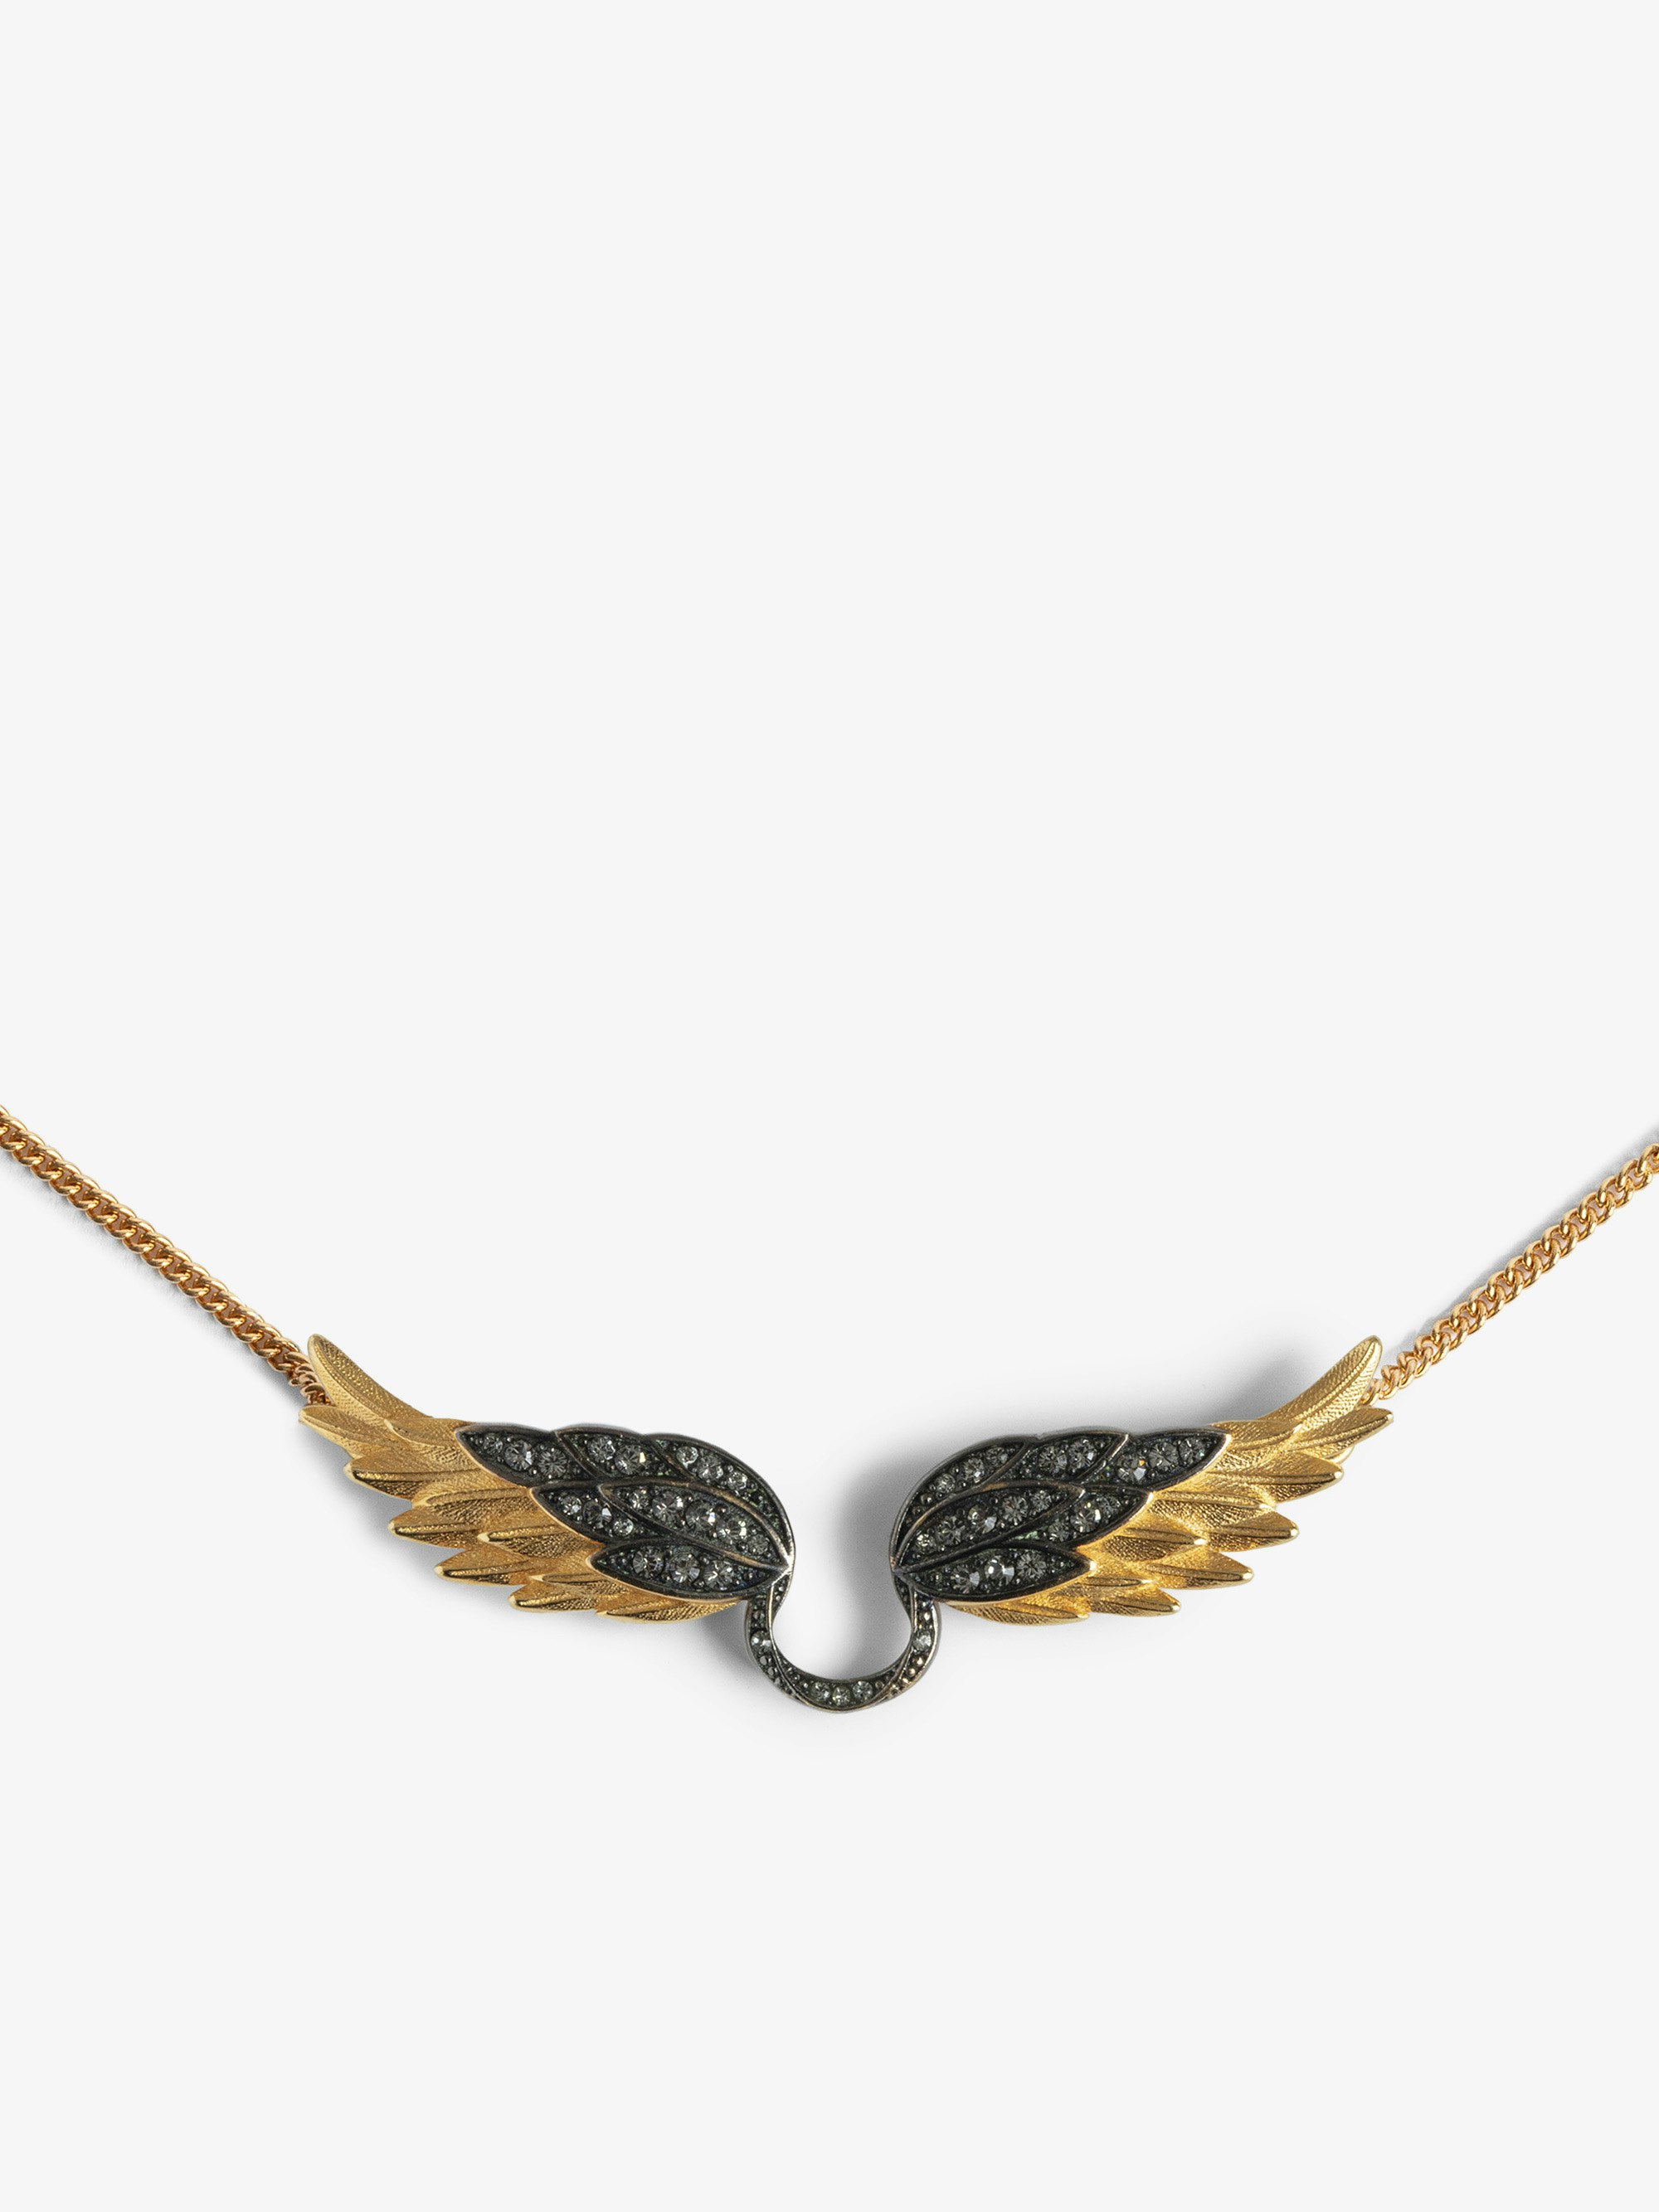 Halskette Rock Feather - Halskette mit kristallbesetztem Flügelanhänger.